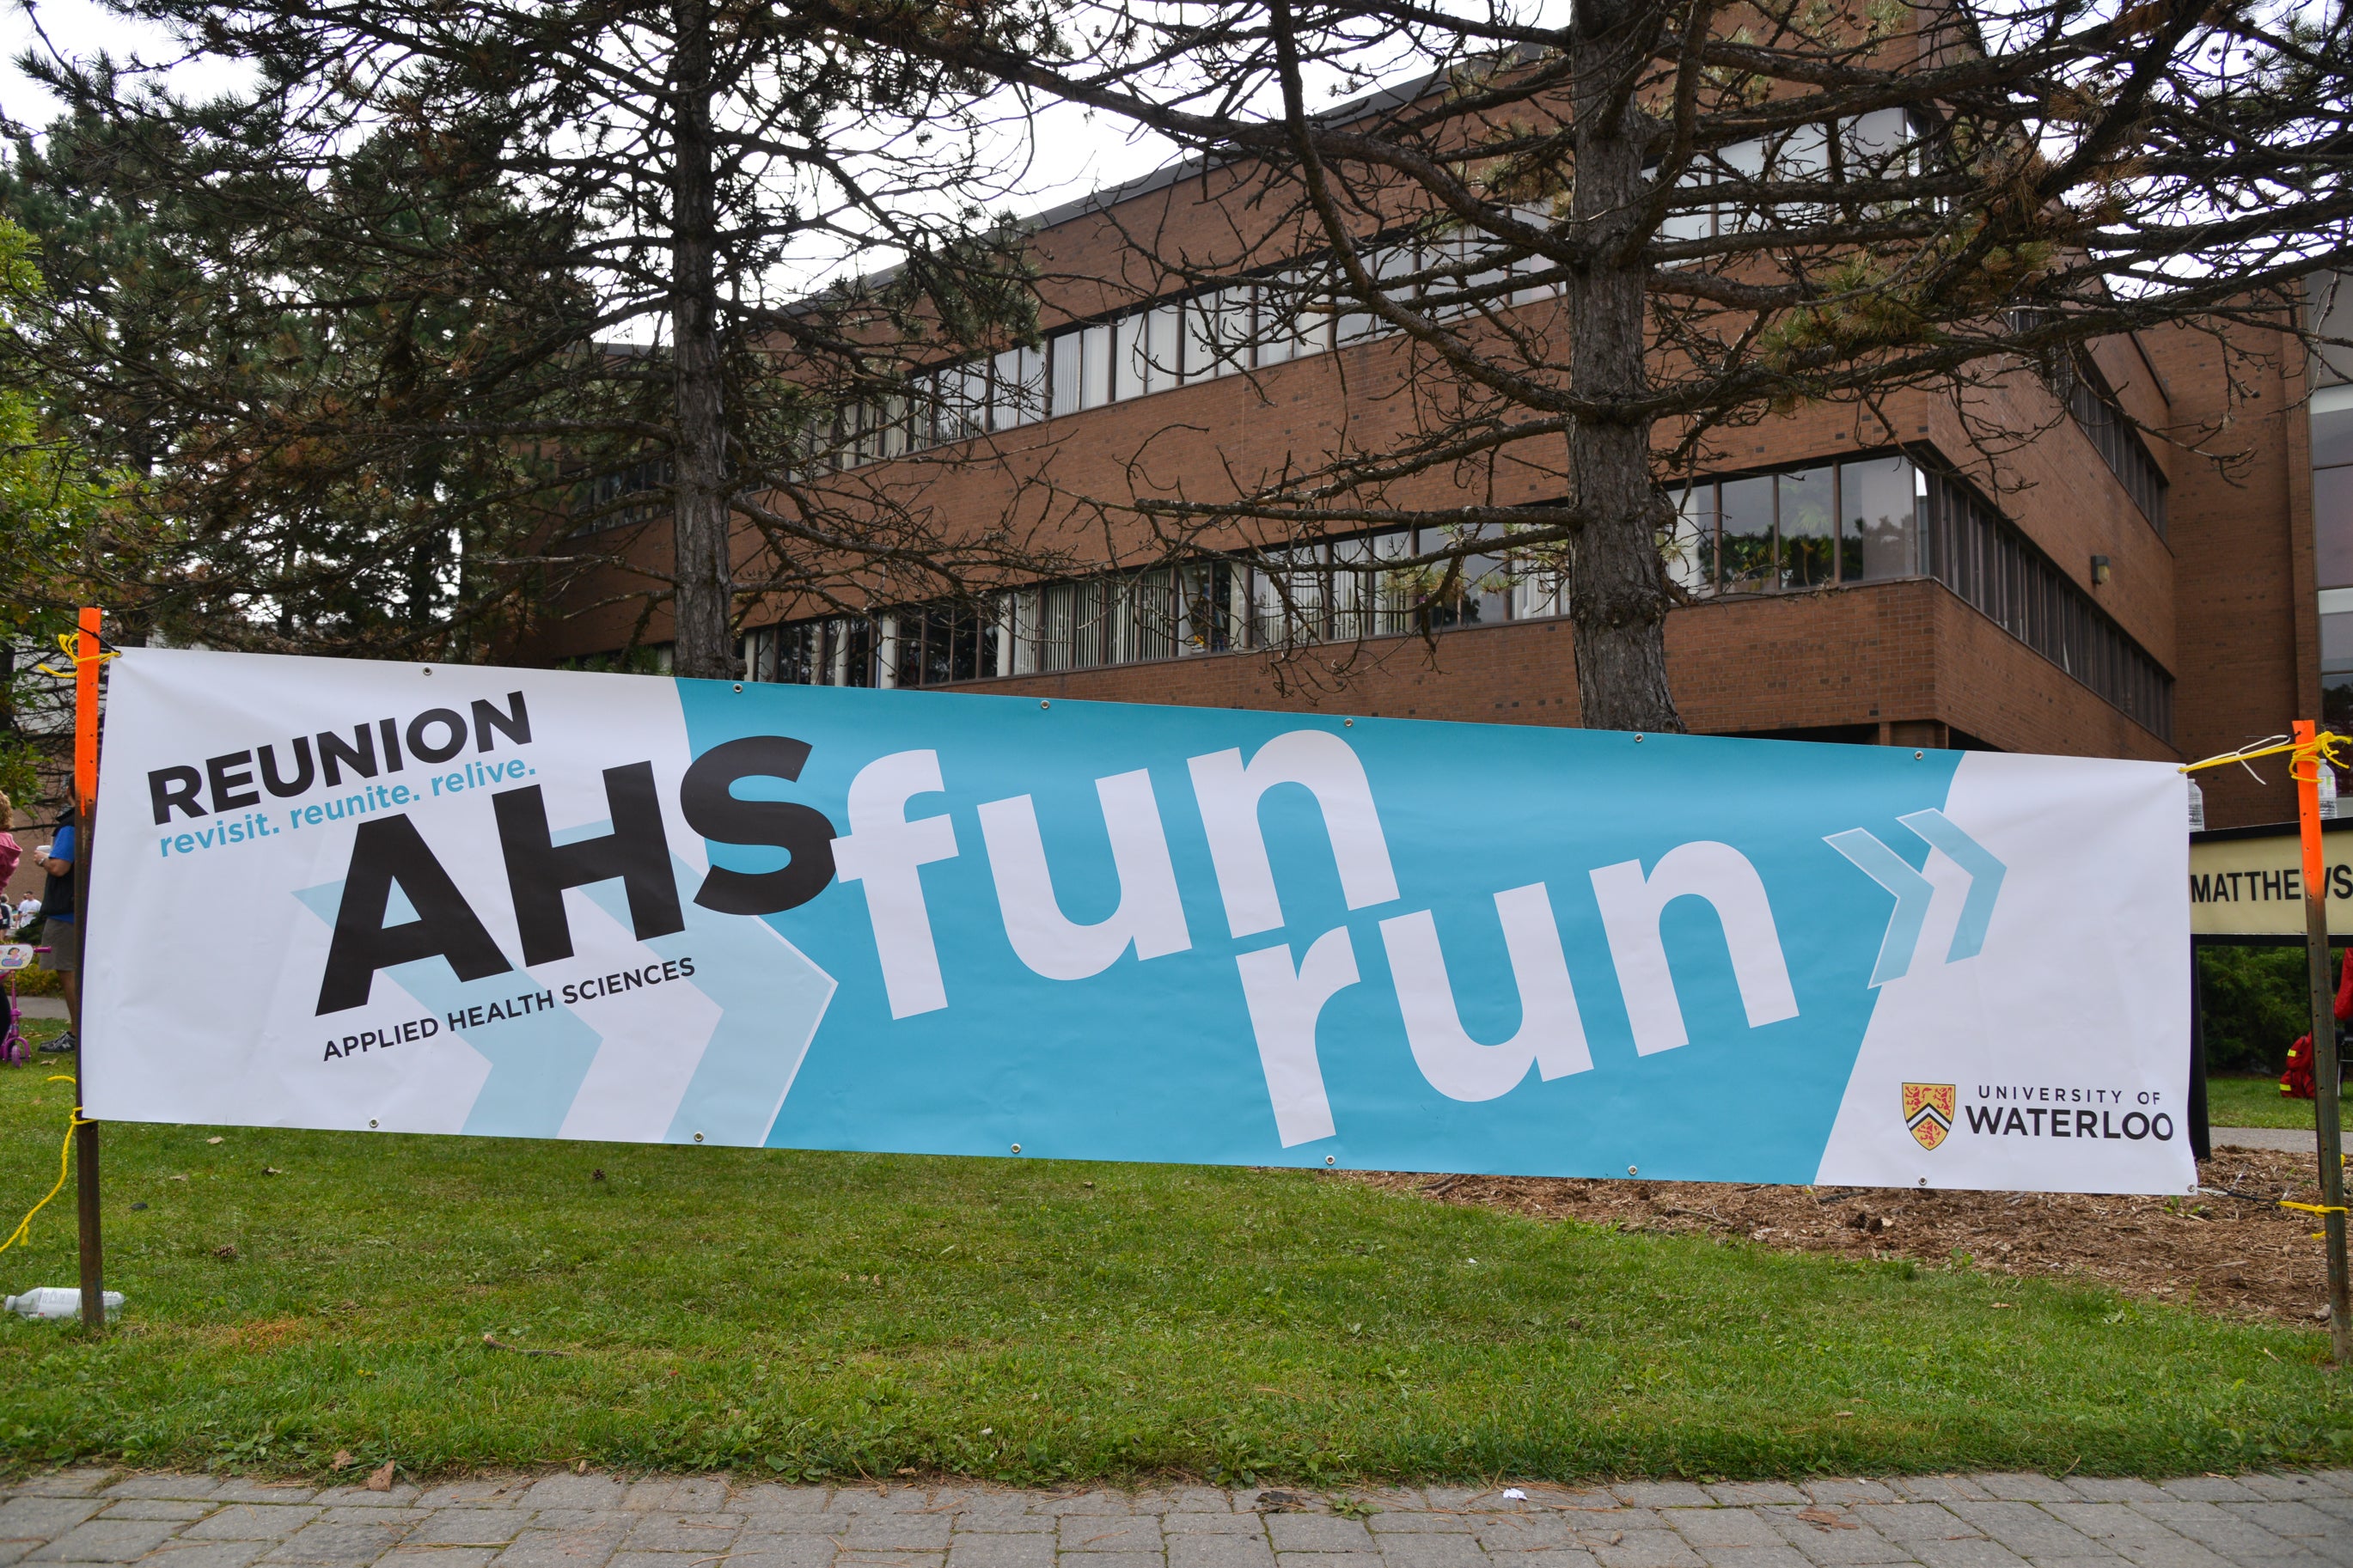 Applied Health Sciences fun run banner.